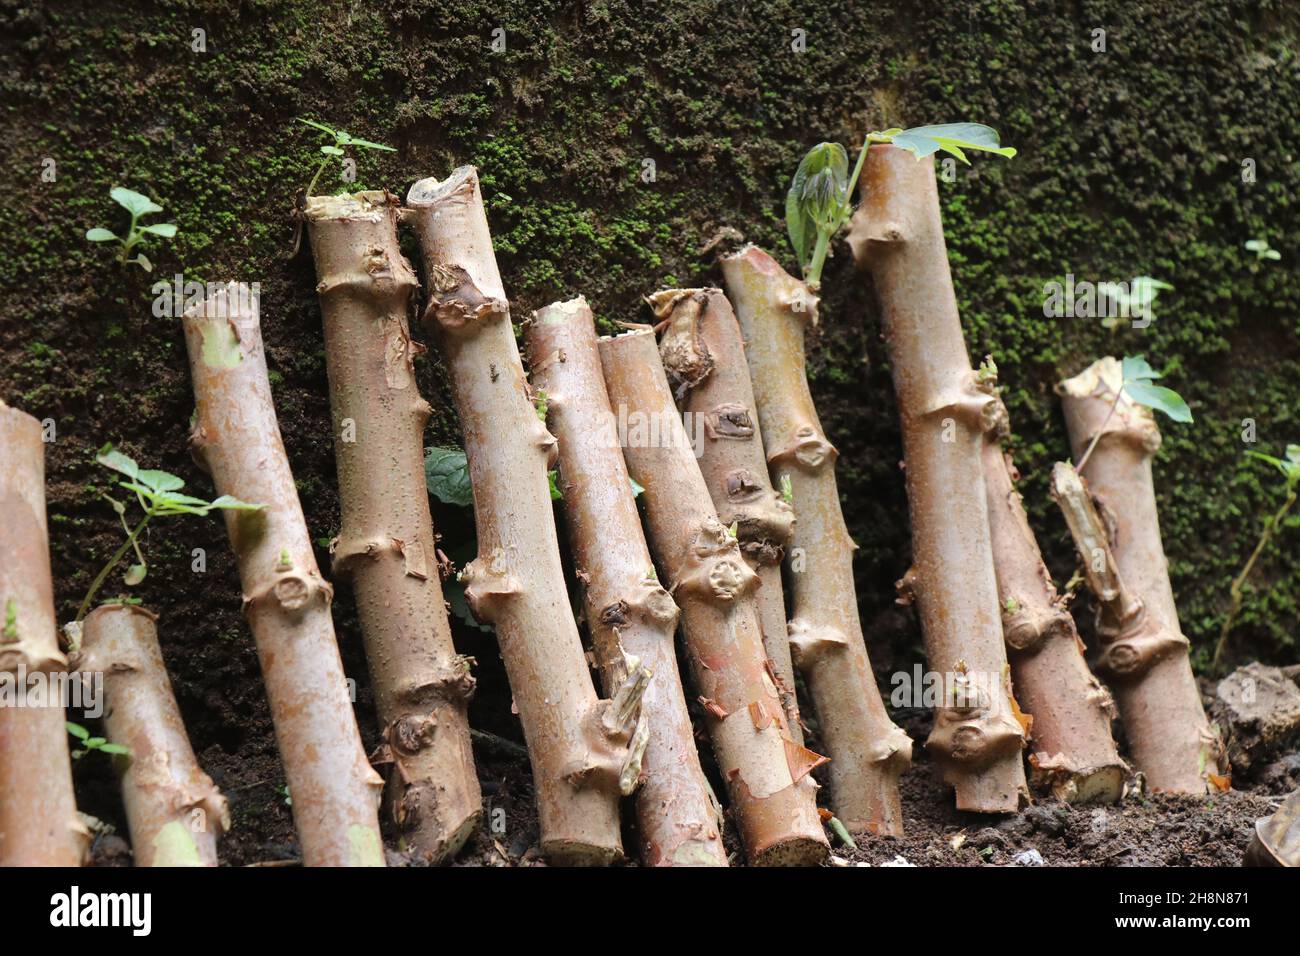 Mandioca o tallo de planta de tapioca cortado en trozos para plantación, cultivo de yuca con troncos frescos Foto de stock